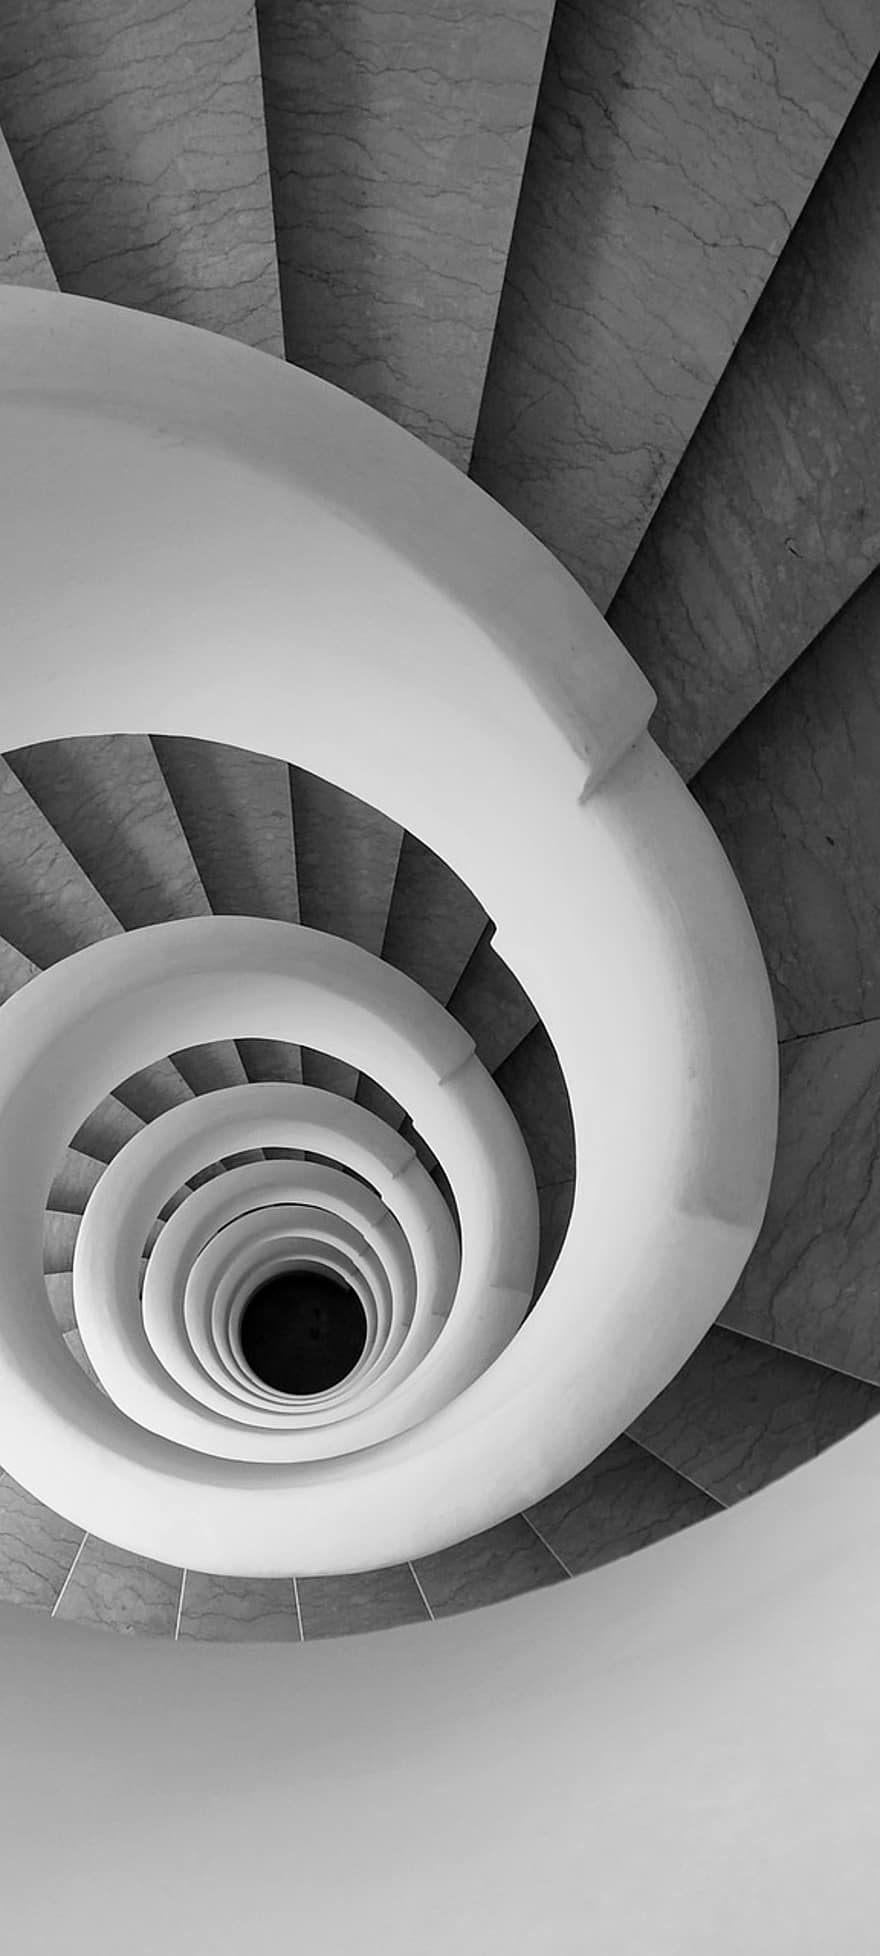 spiraltrappa, trapphus, spiral-, trappa, arkitektur, inomhus, design, modern, abstrakt, kurva, inhemska rum